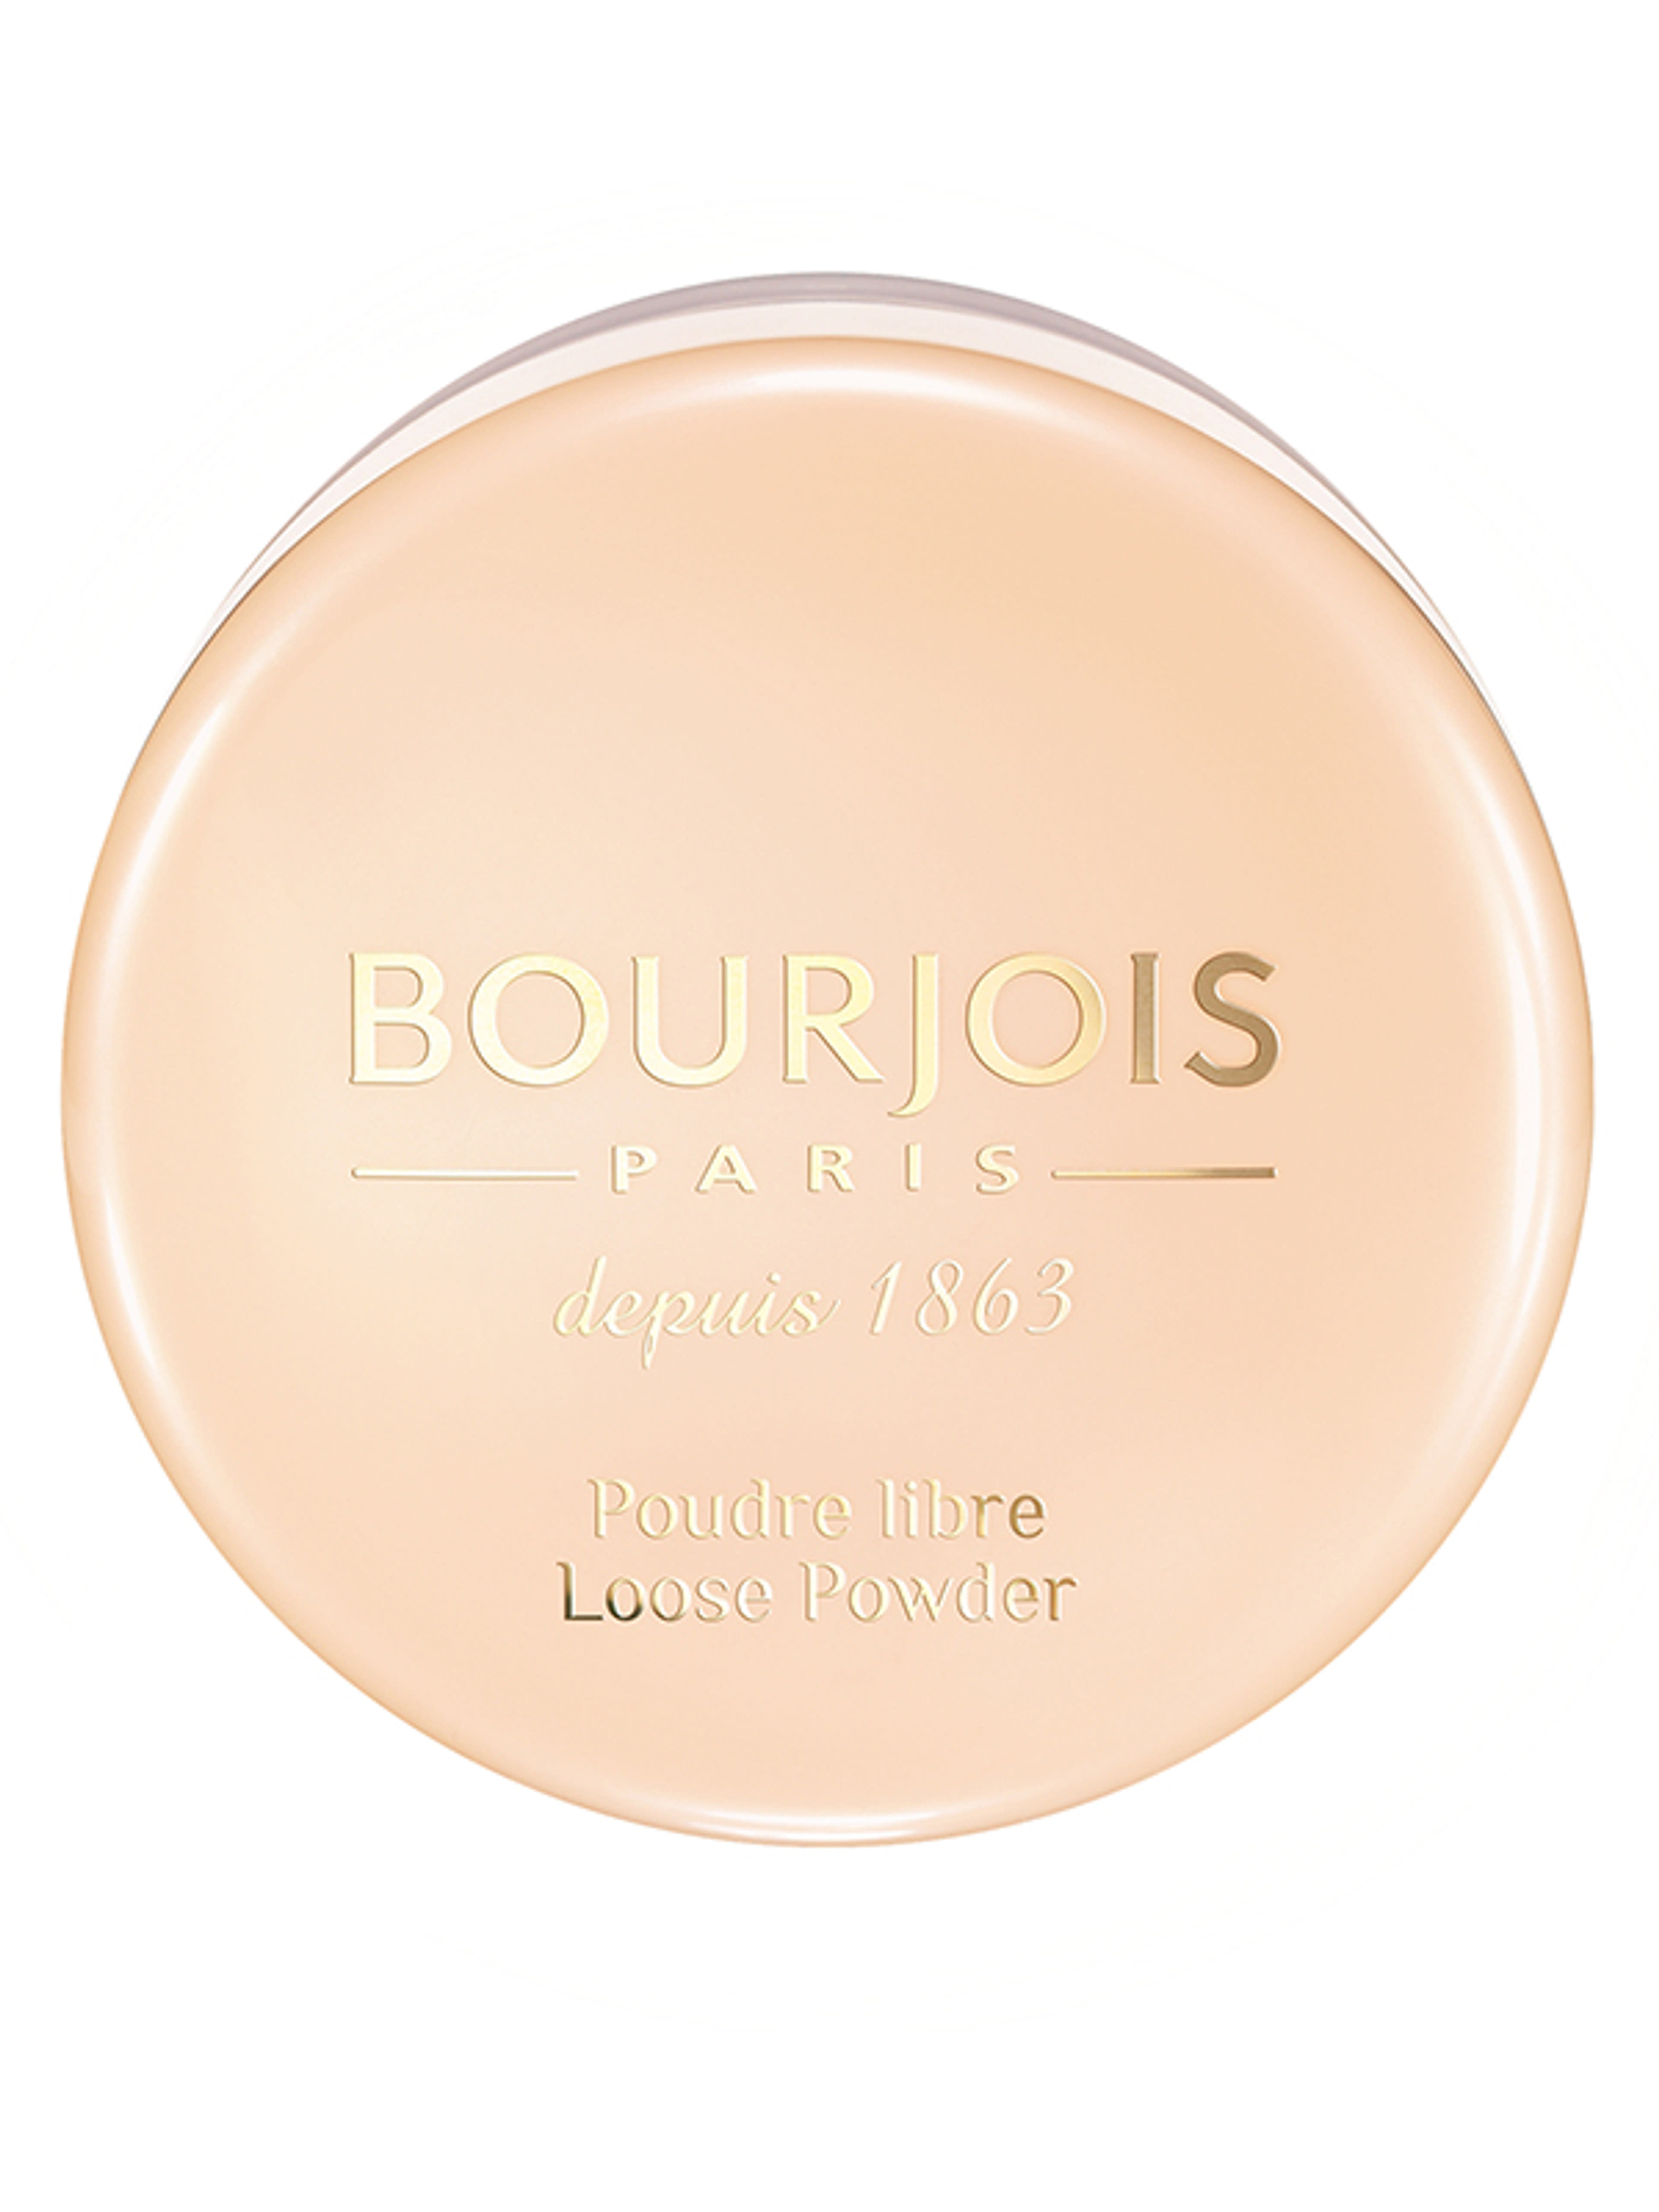 Bourjois Loose Powder porpúder /01 - 1 db-1